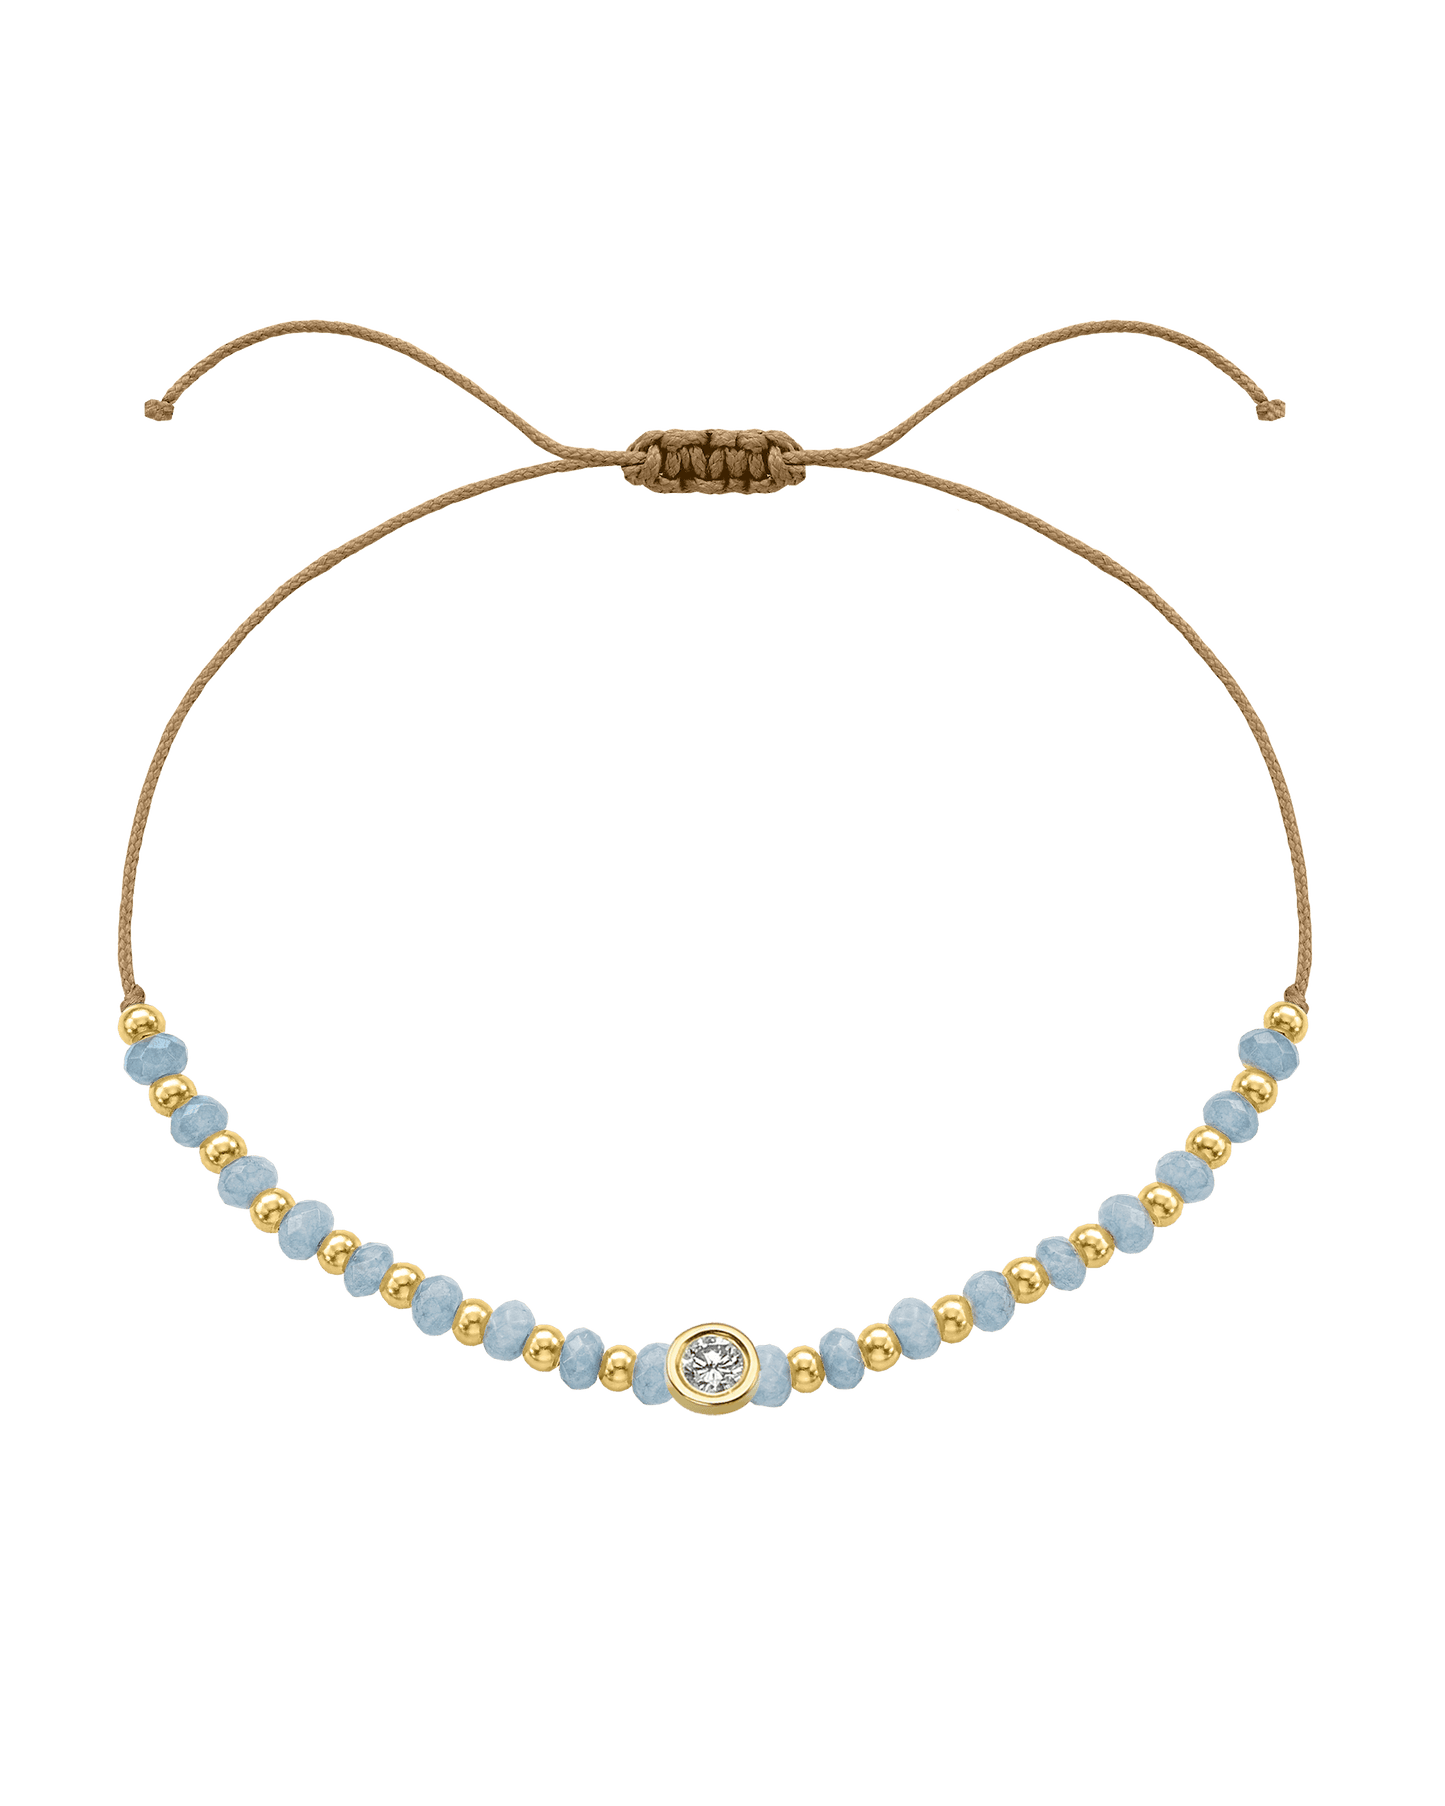 Celestite Gemstone String of Love Bracelet for Mindfulness - 14K Yellow Gold Bracelets 14K Solid Gold Camel Large: 0.1ct 